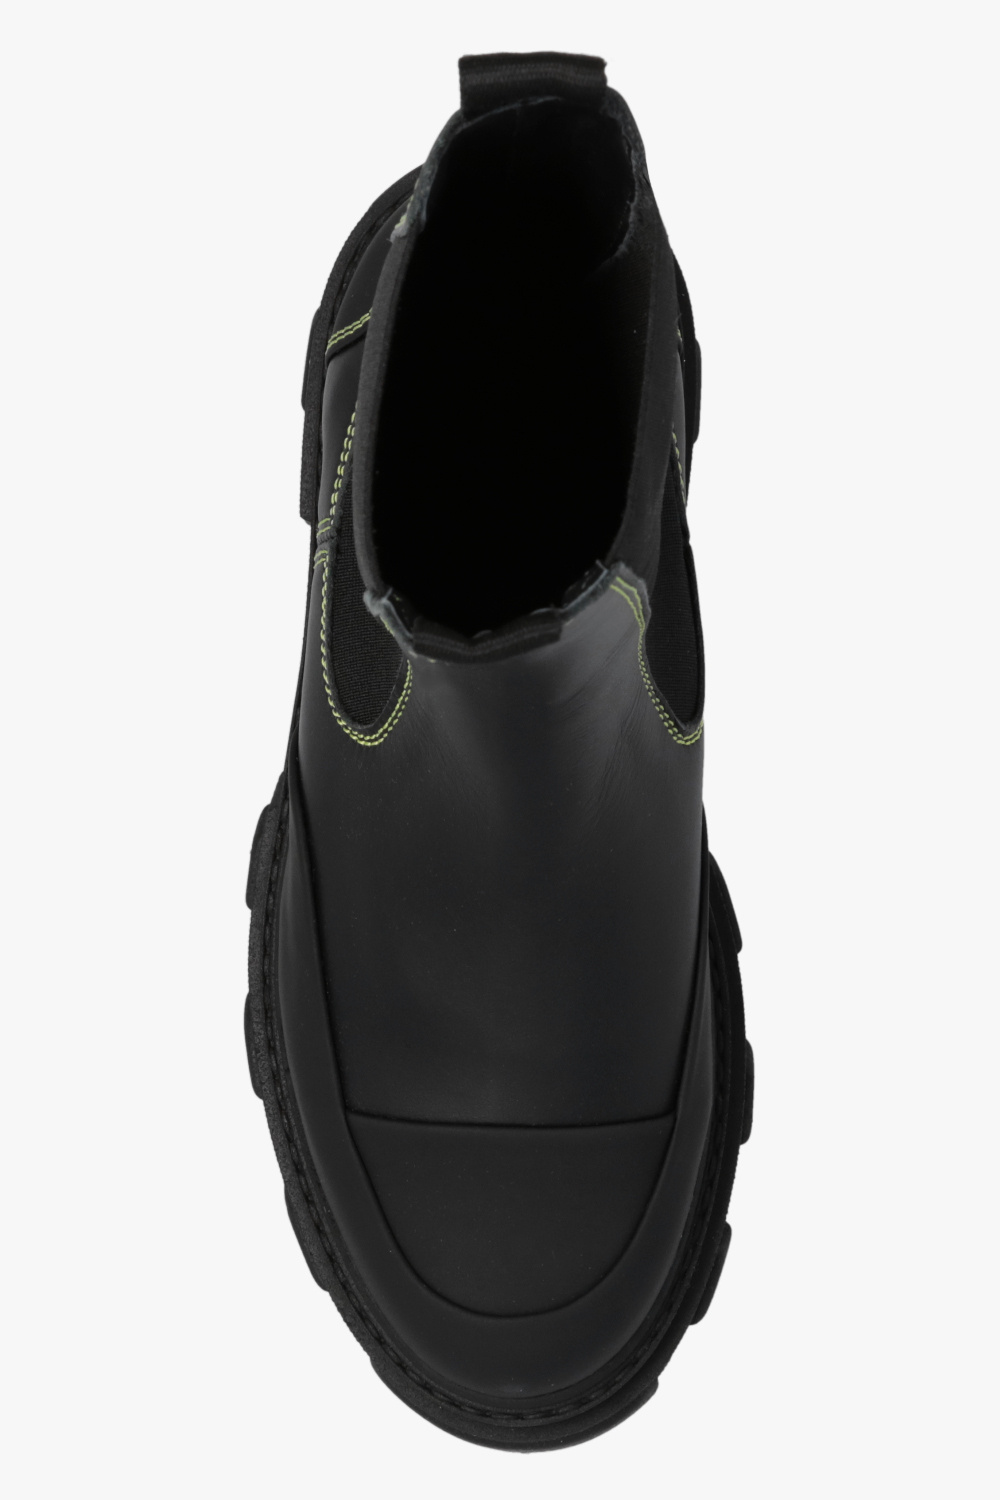 Ganni Sneakers Grid Web S70492-1 Wht Iri